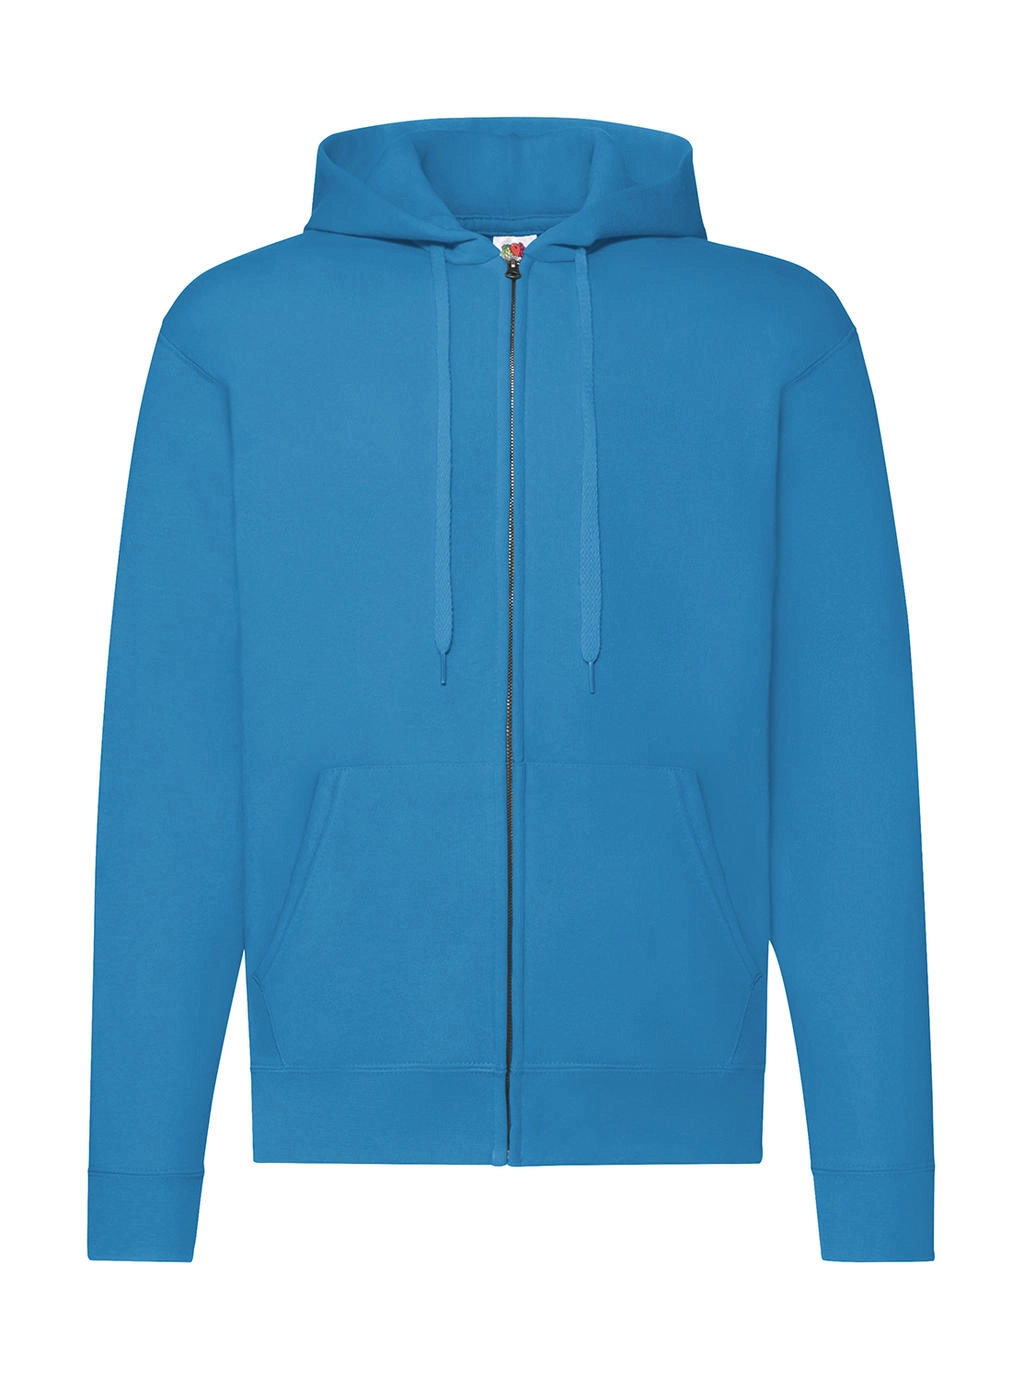 Classic Hooded Sweat Jacket zum Besticken und Bedrucken in der Farbe Azure Blue mit Ihren Logo, Schriftzug oder Motiv.